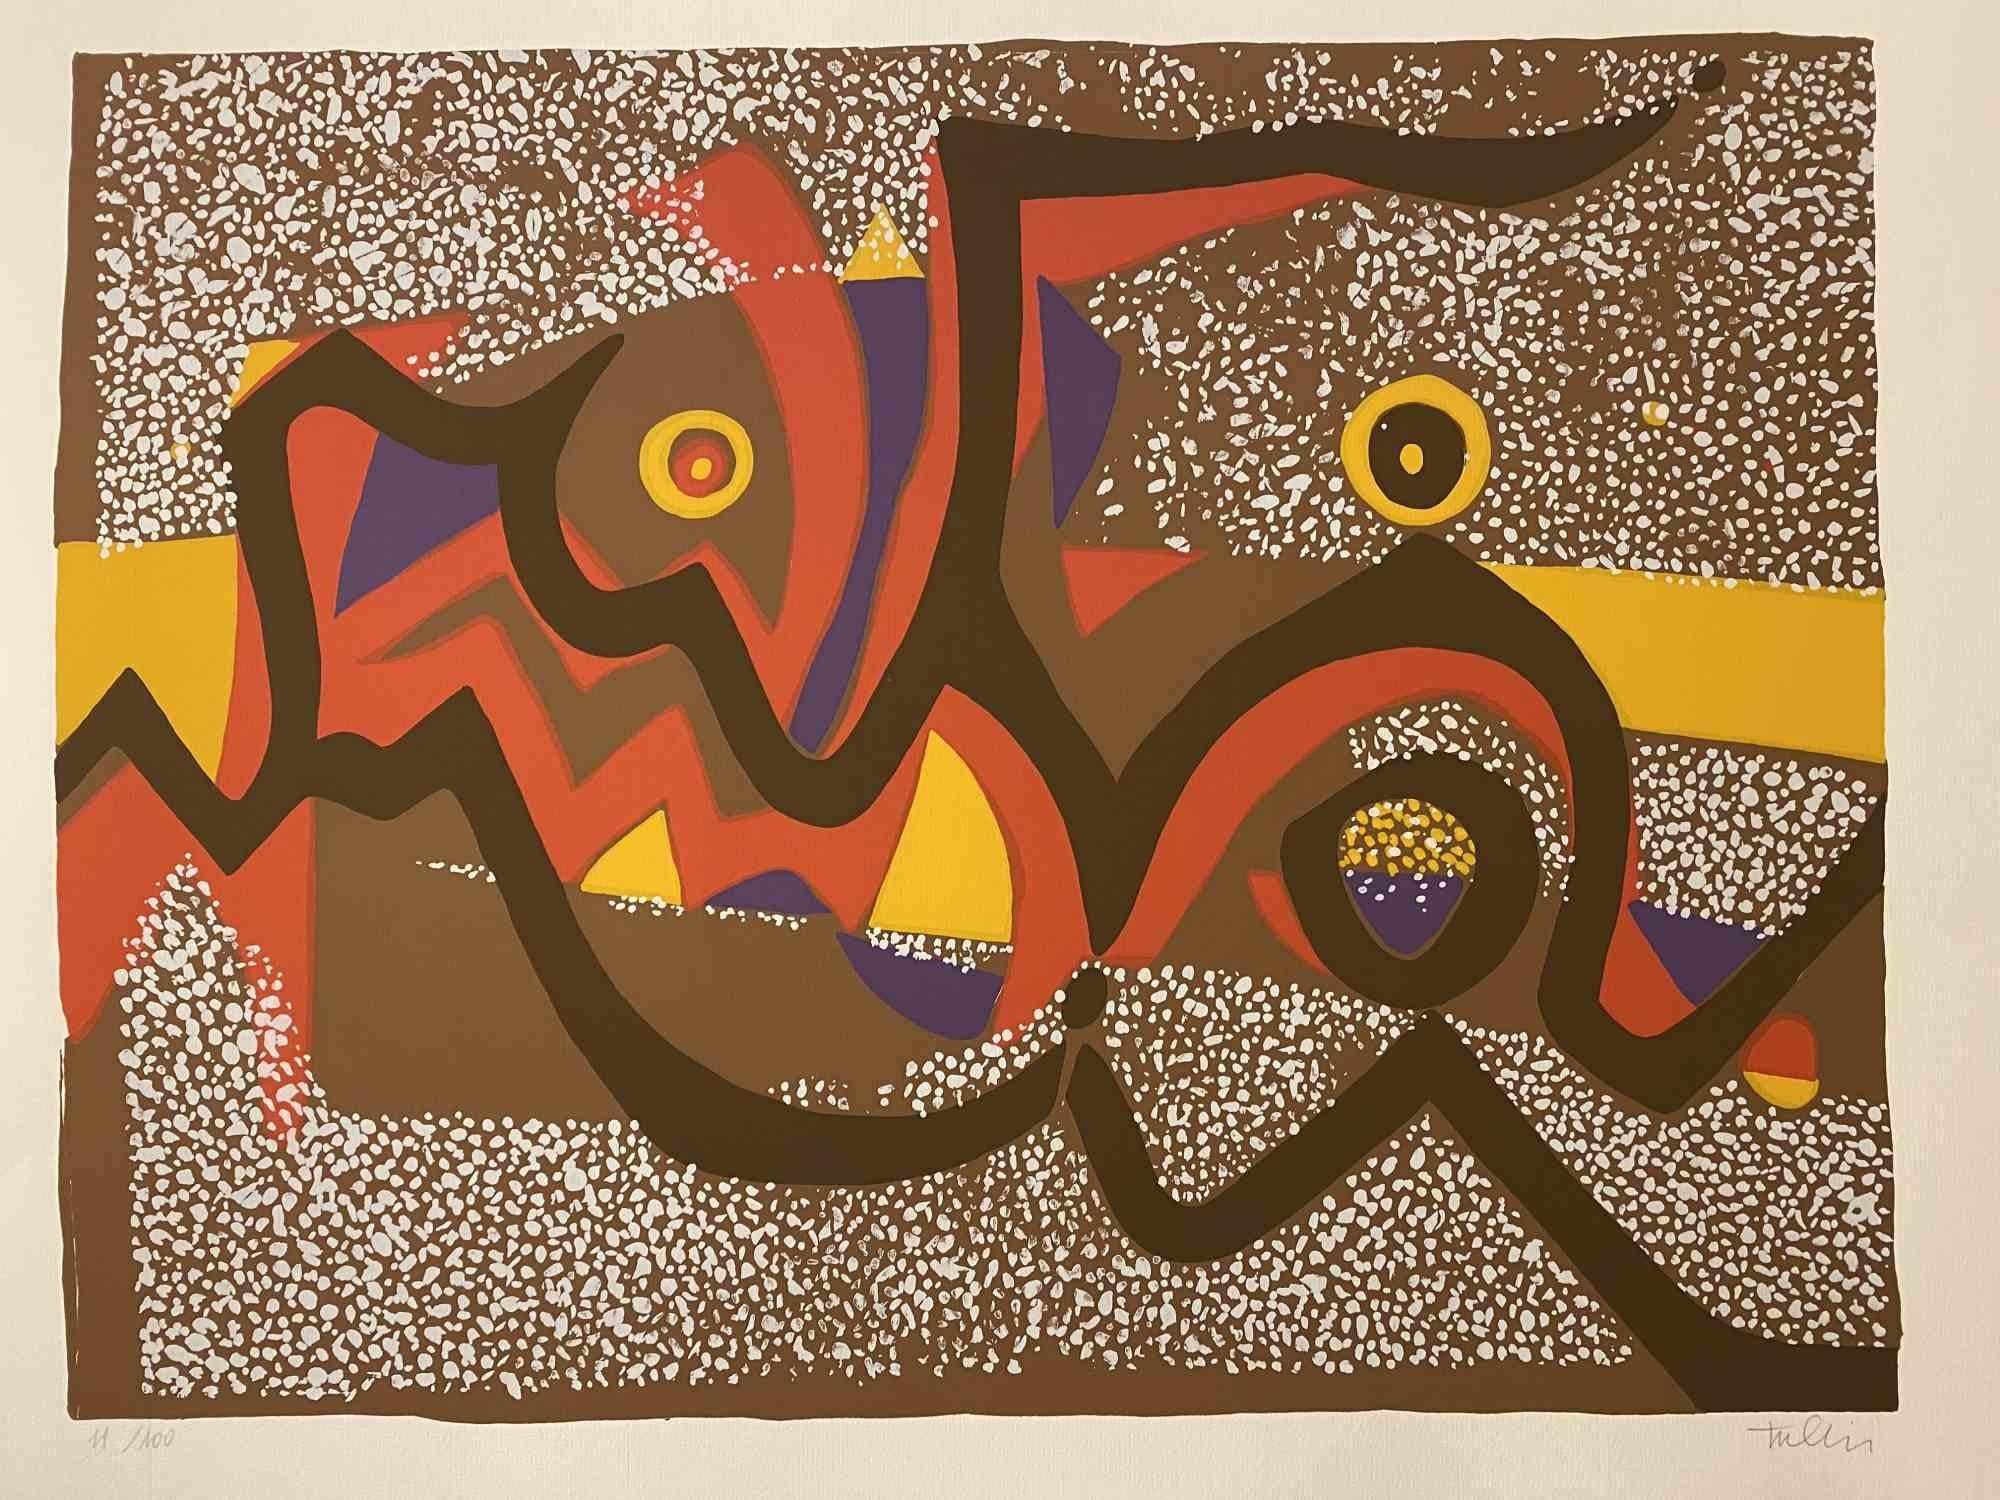 Composition carnavalesque est une sérigraphie colorée sur papier, réalisée dans les années 1970 par l'artiste italien Wladimiro Tulli.

Signé à la main en bas à droite.

Numéroté, édition de 11/100.

Une belle œuvre d'art représentant une